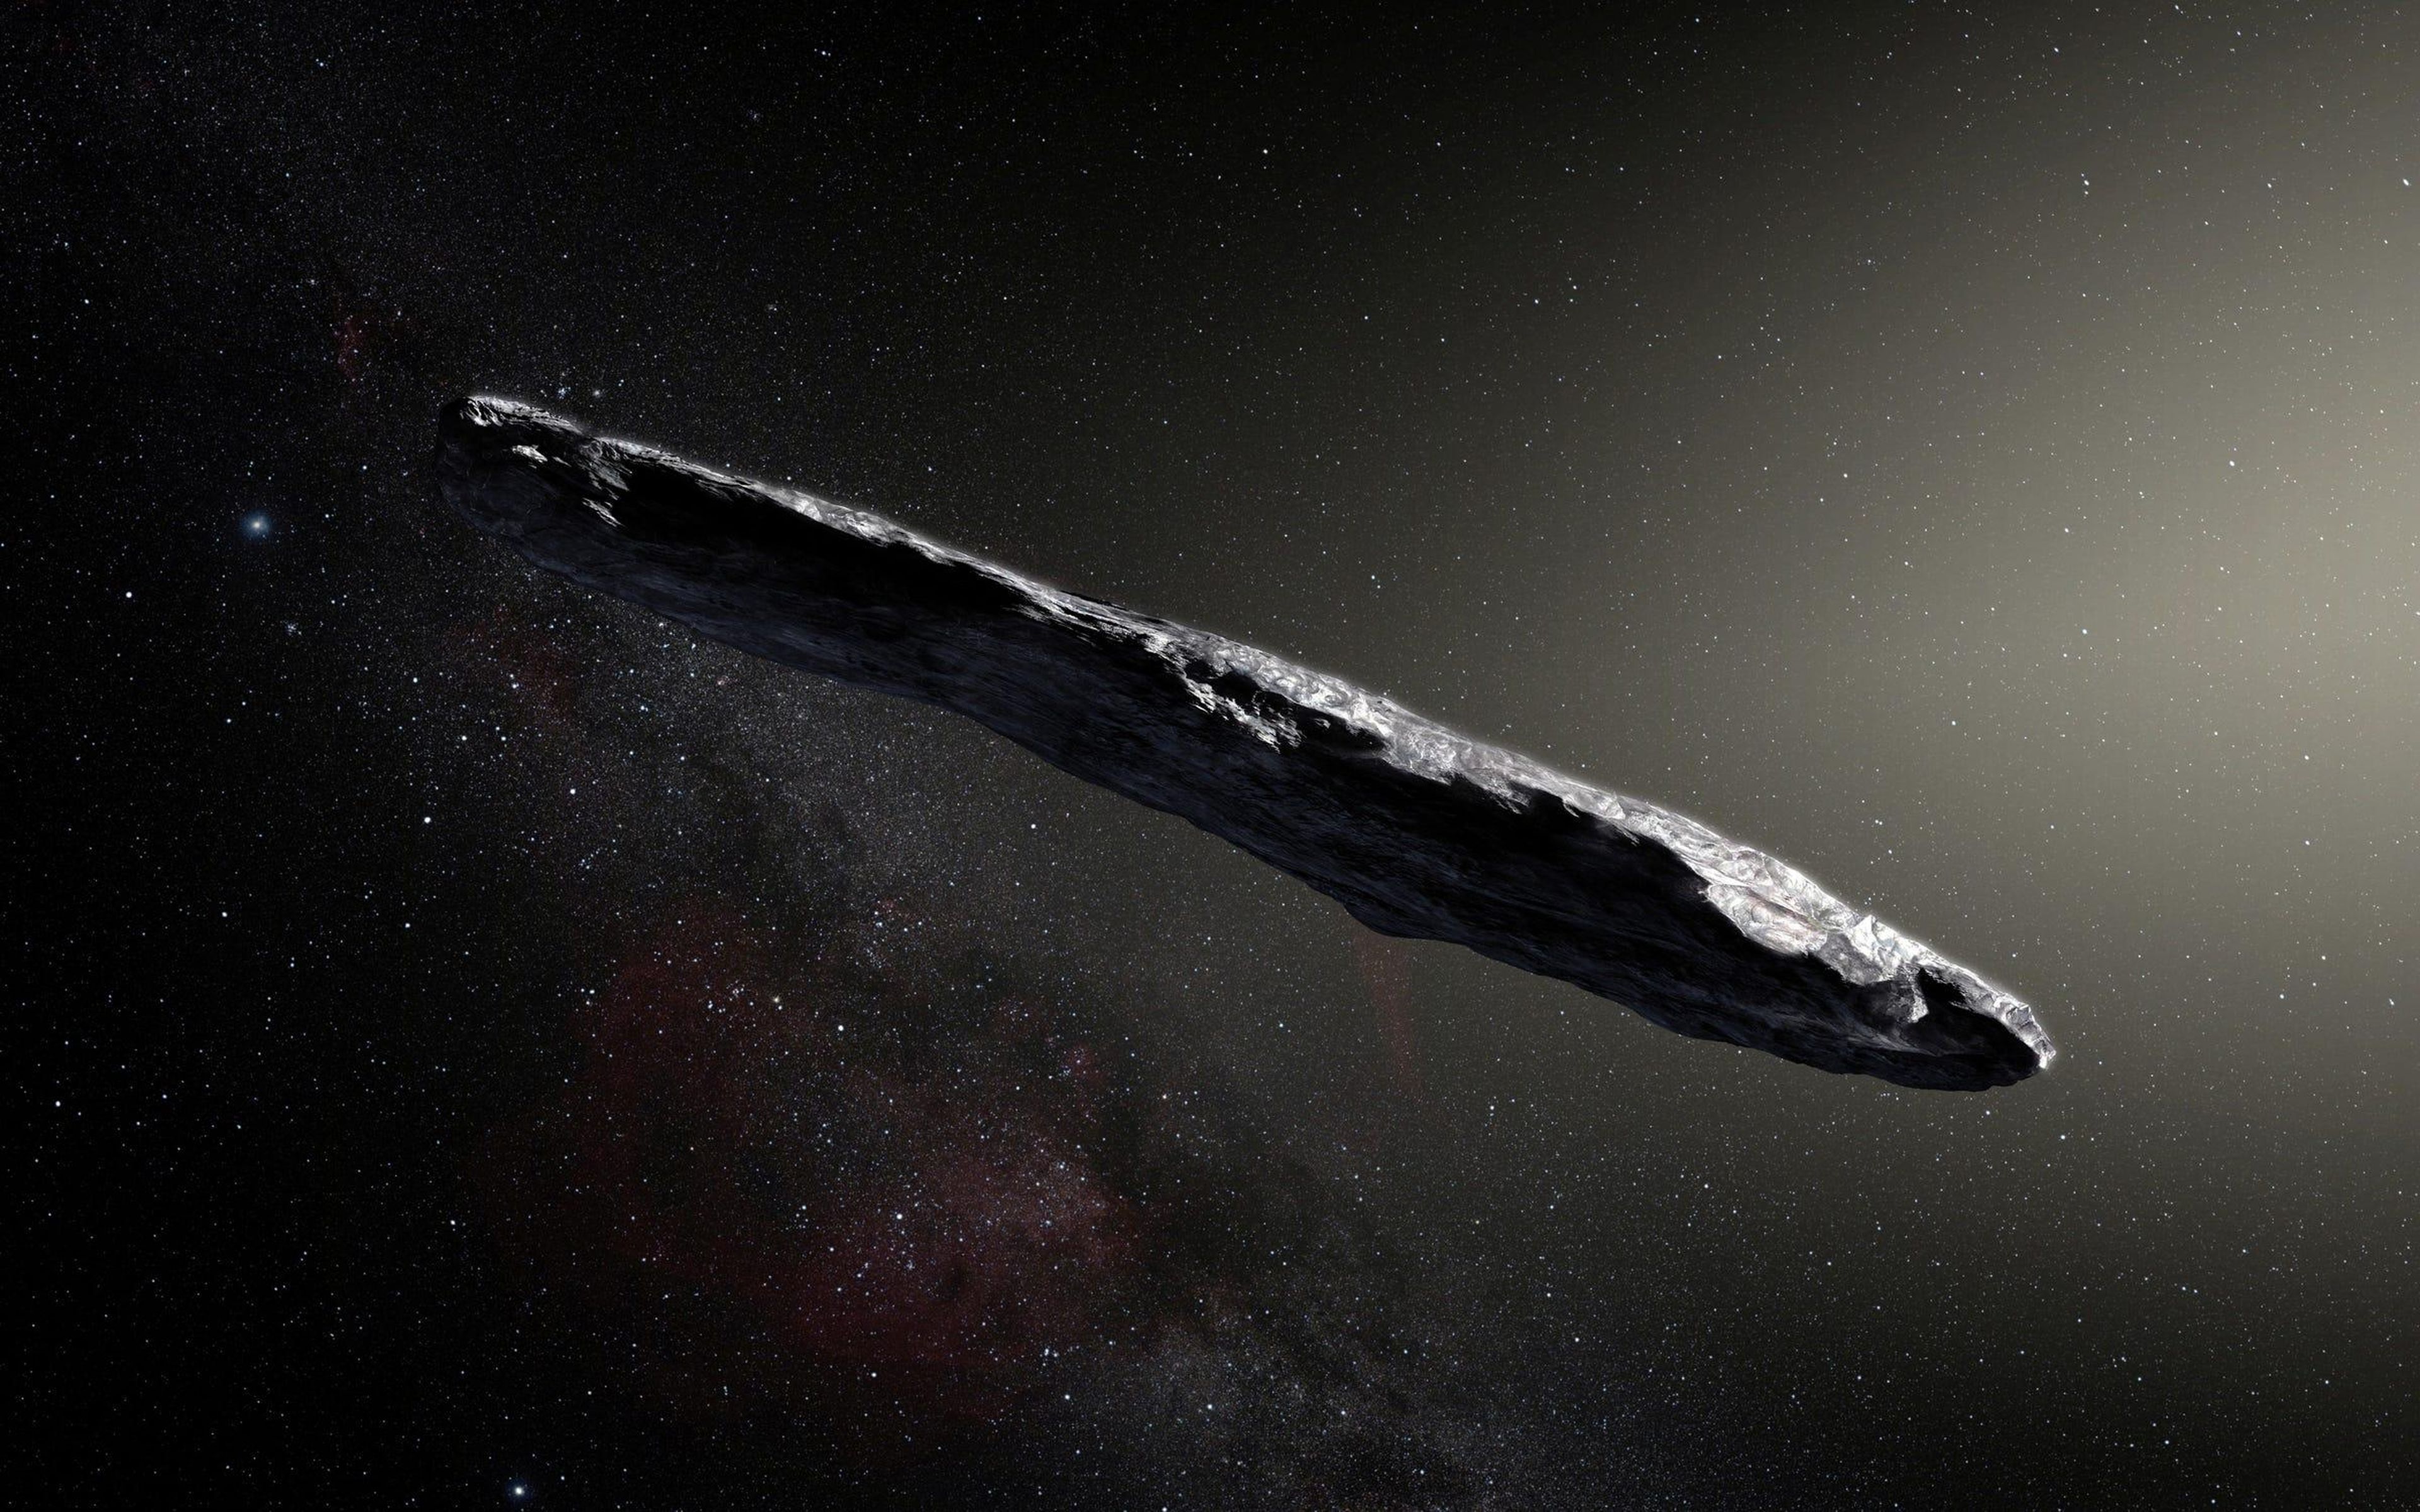 La impresión de este artista muestra el primer objeto interestelar conocido que visitó el sistema solar, "Oumuamua", que fue descubierto el 19 de octubre de 2017 por el telescopio Pan-STARRS1 en Hawai.